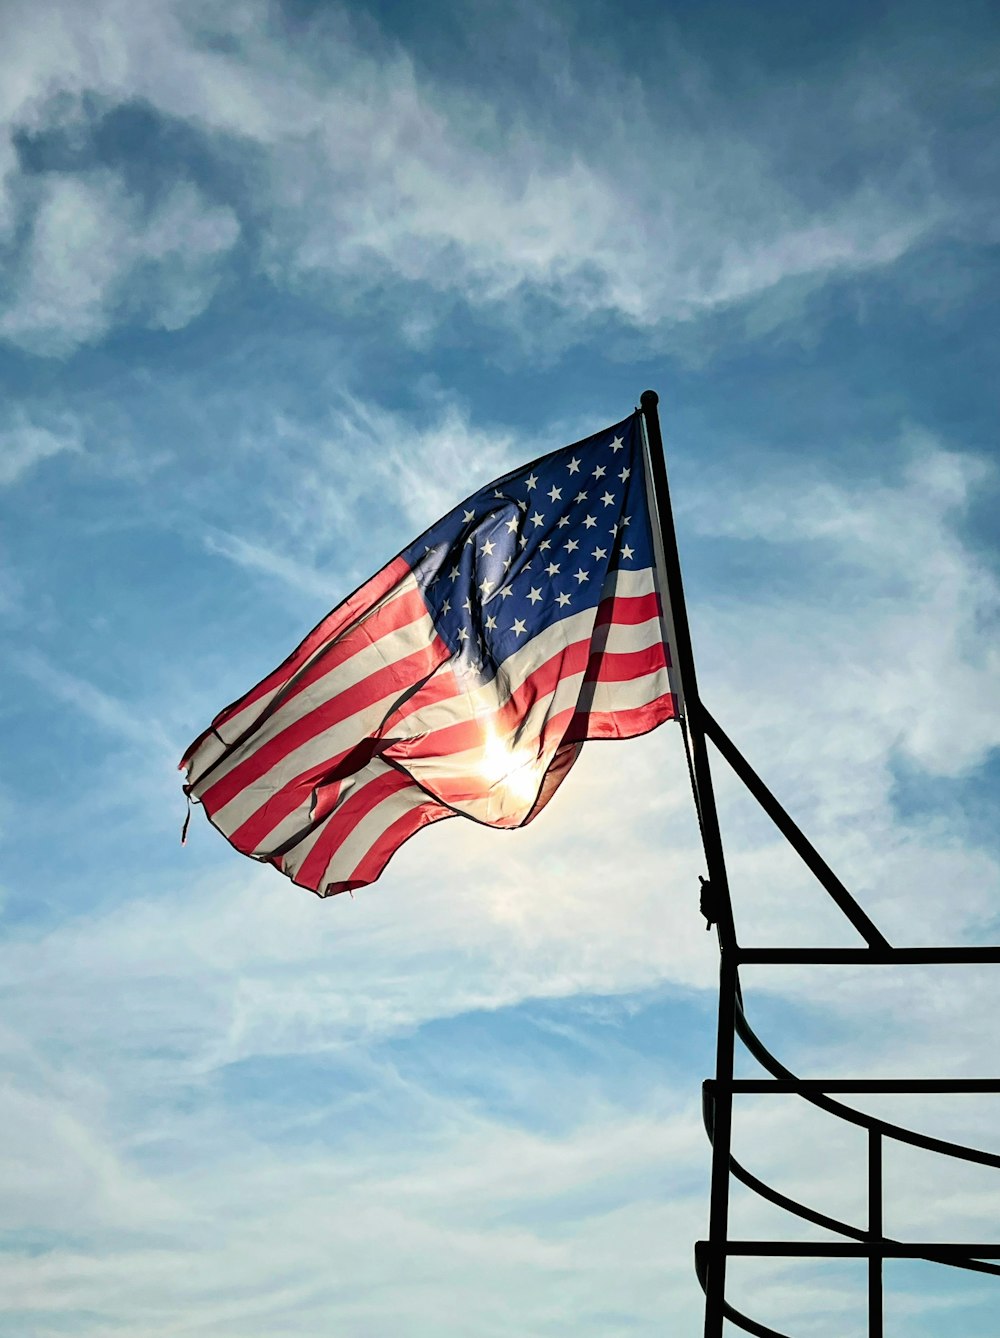 Uma grande bandeira americana voando no céu